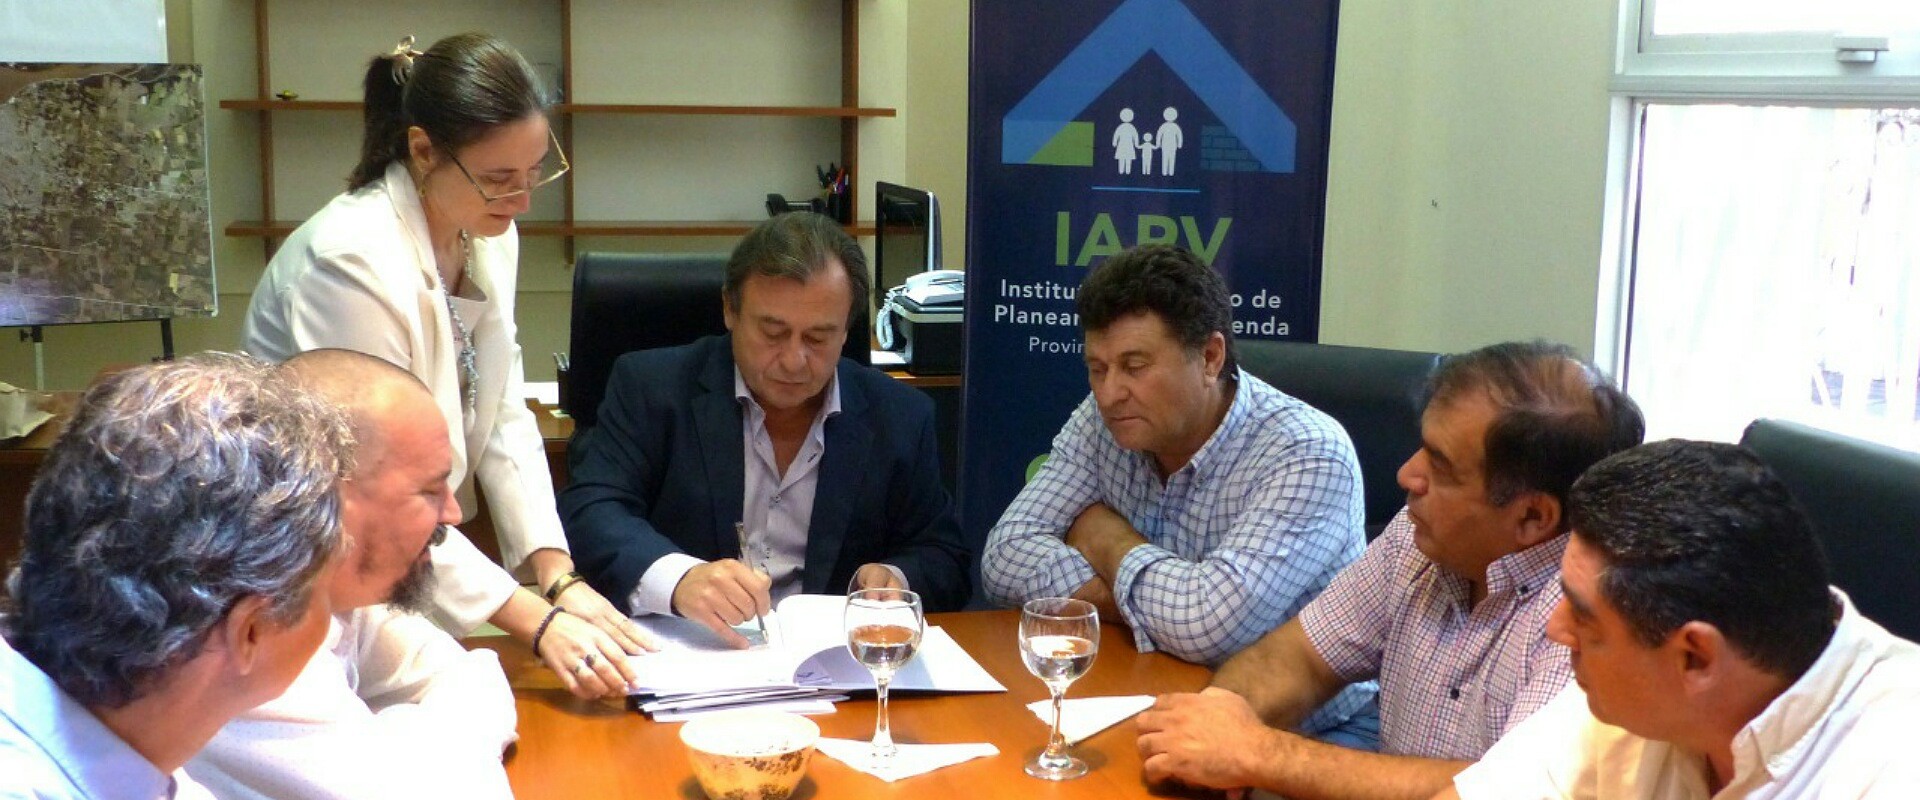 Se firmaron contratos para la ejecución de viviendas en dos localidades